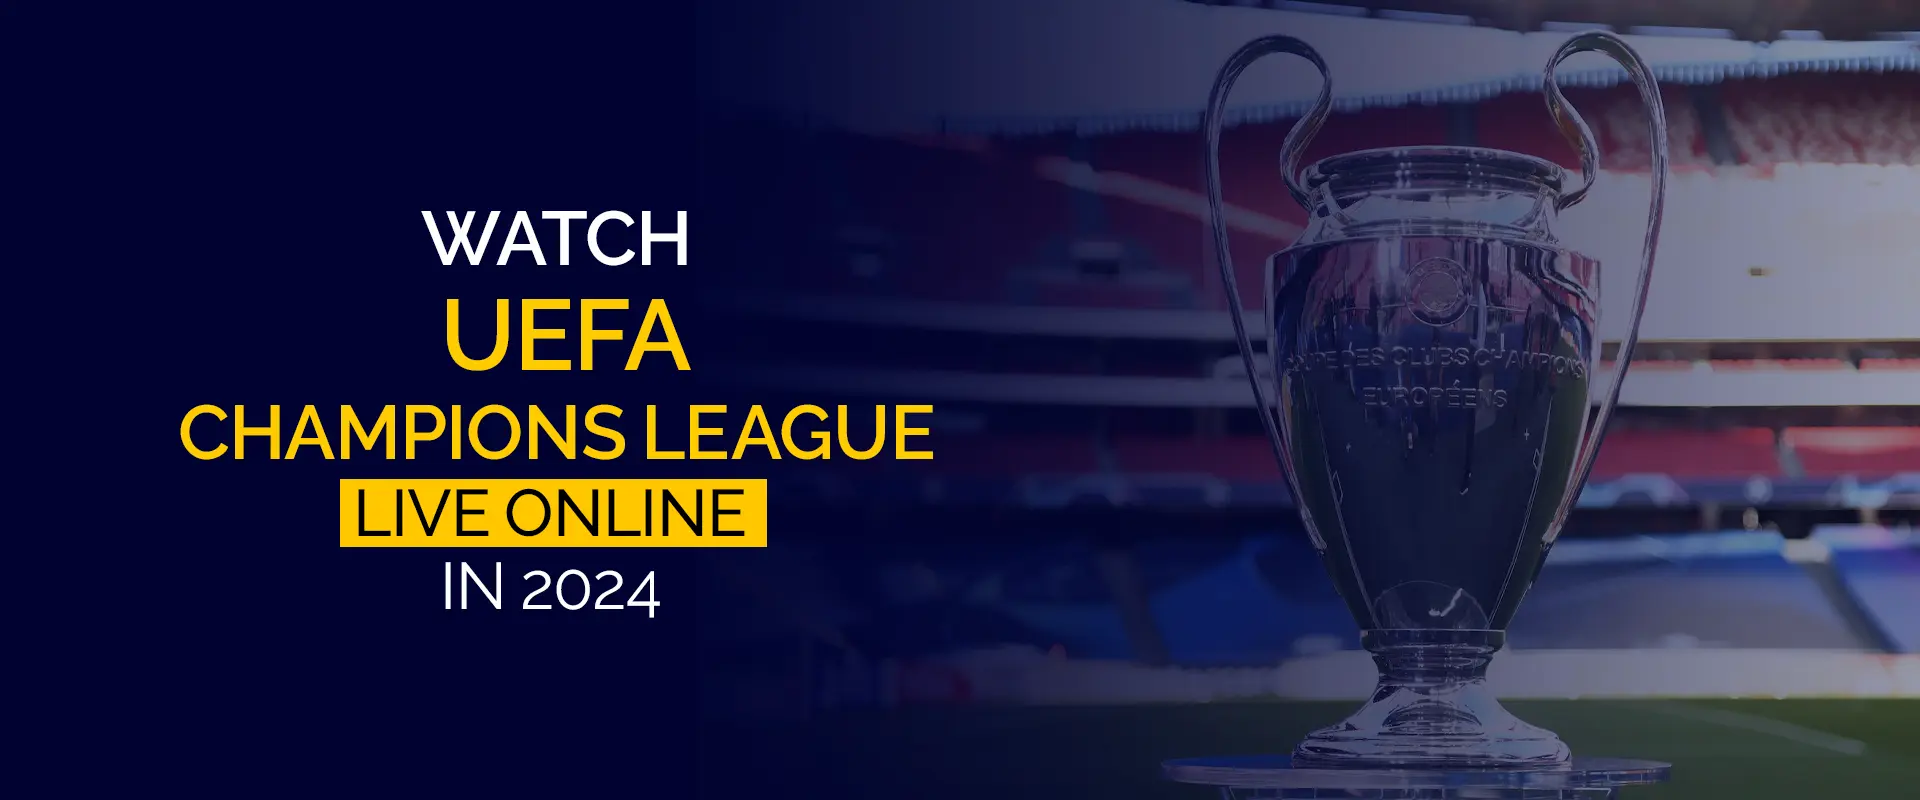 Jak oglądać Ligę Mistrzów UEFA na żywo w Internecie w 2024 r